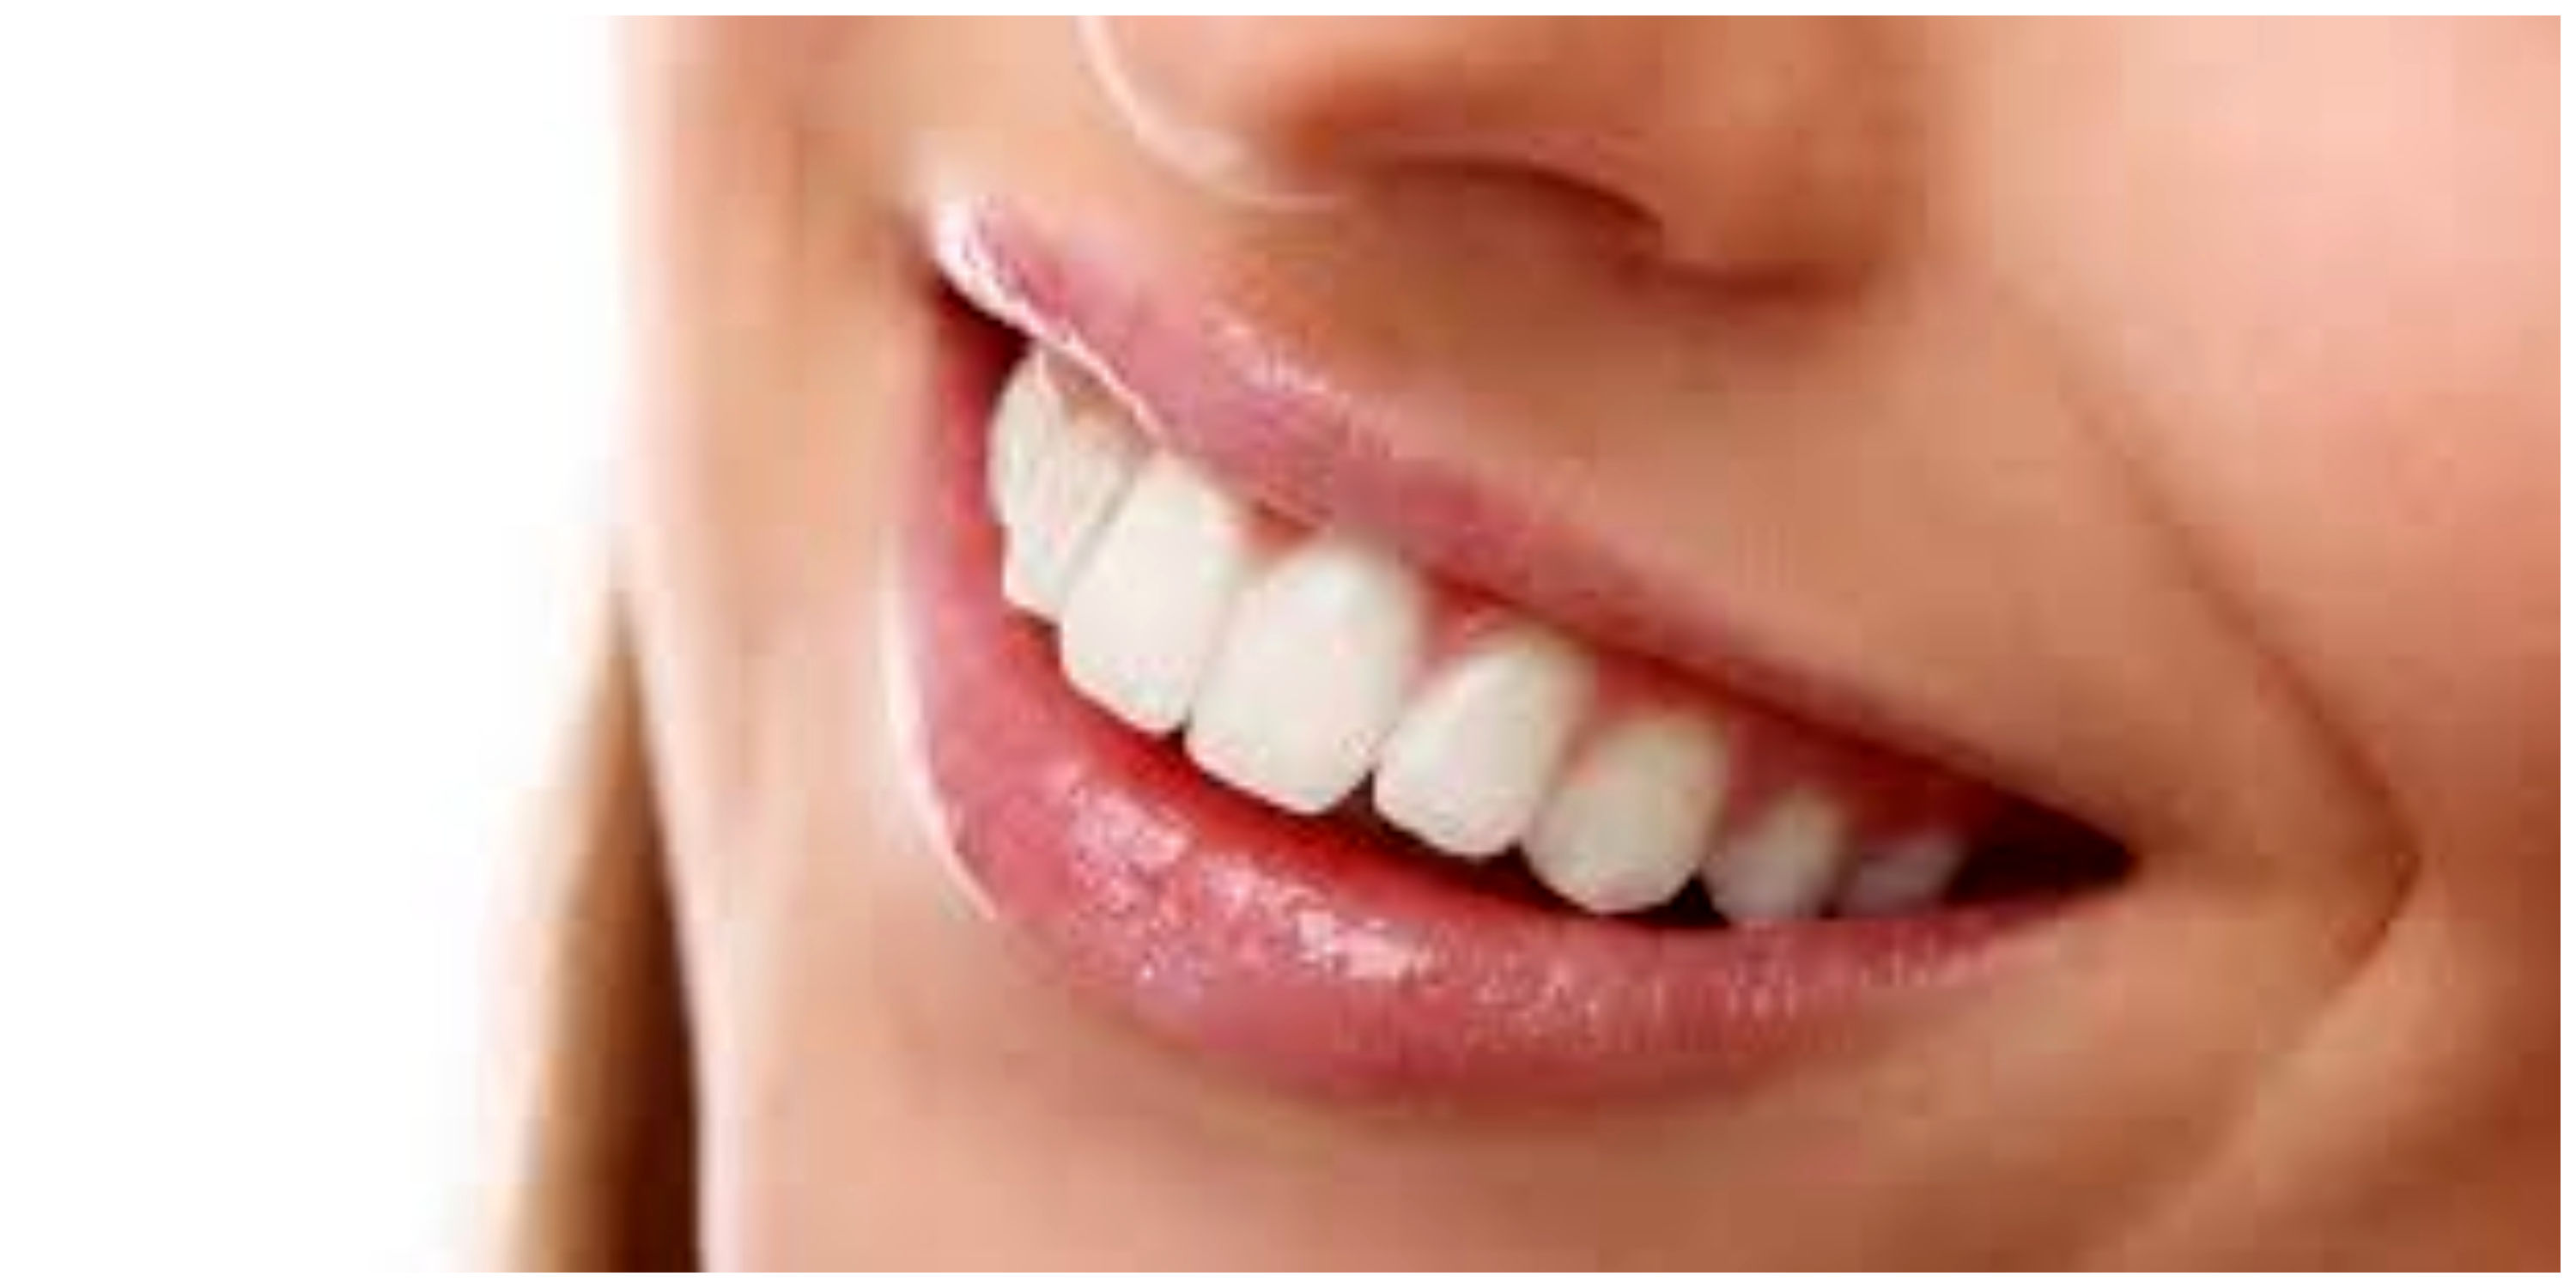 درمان فوری دندان درد در خانه